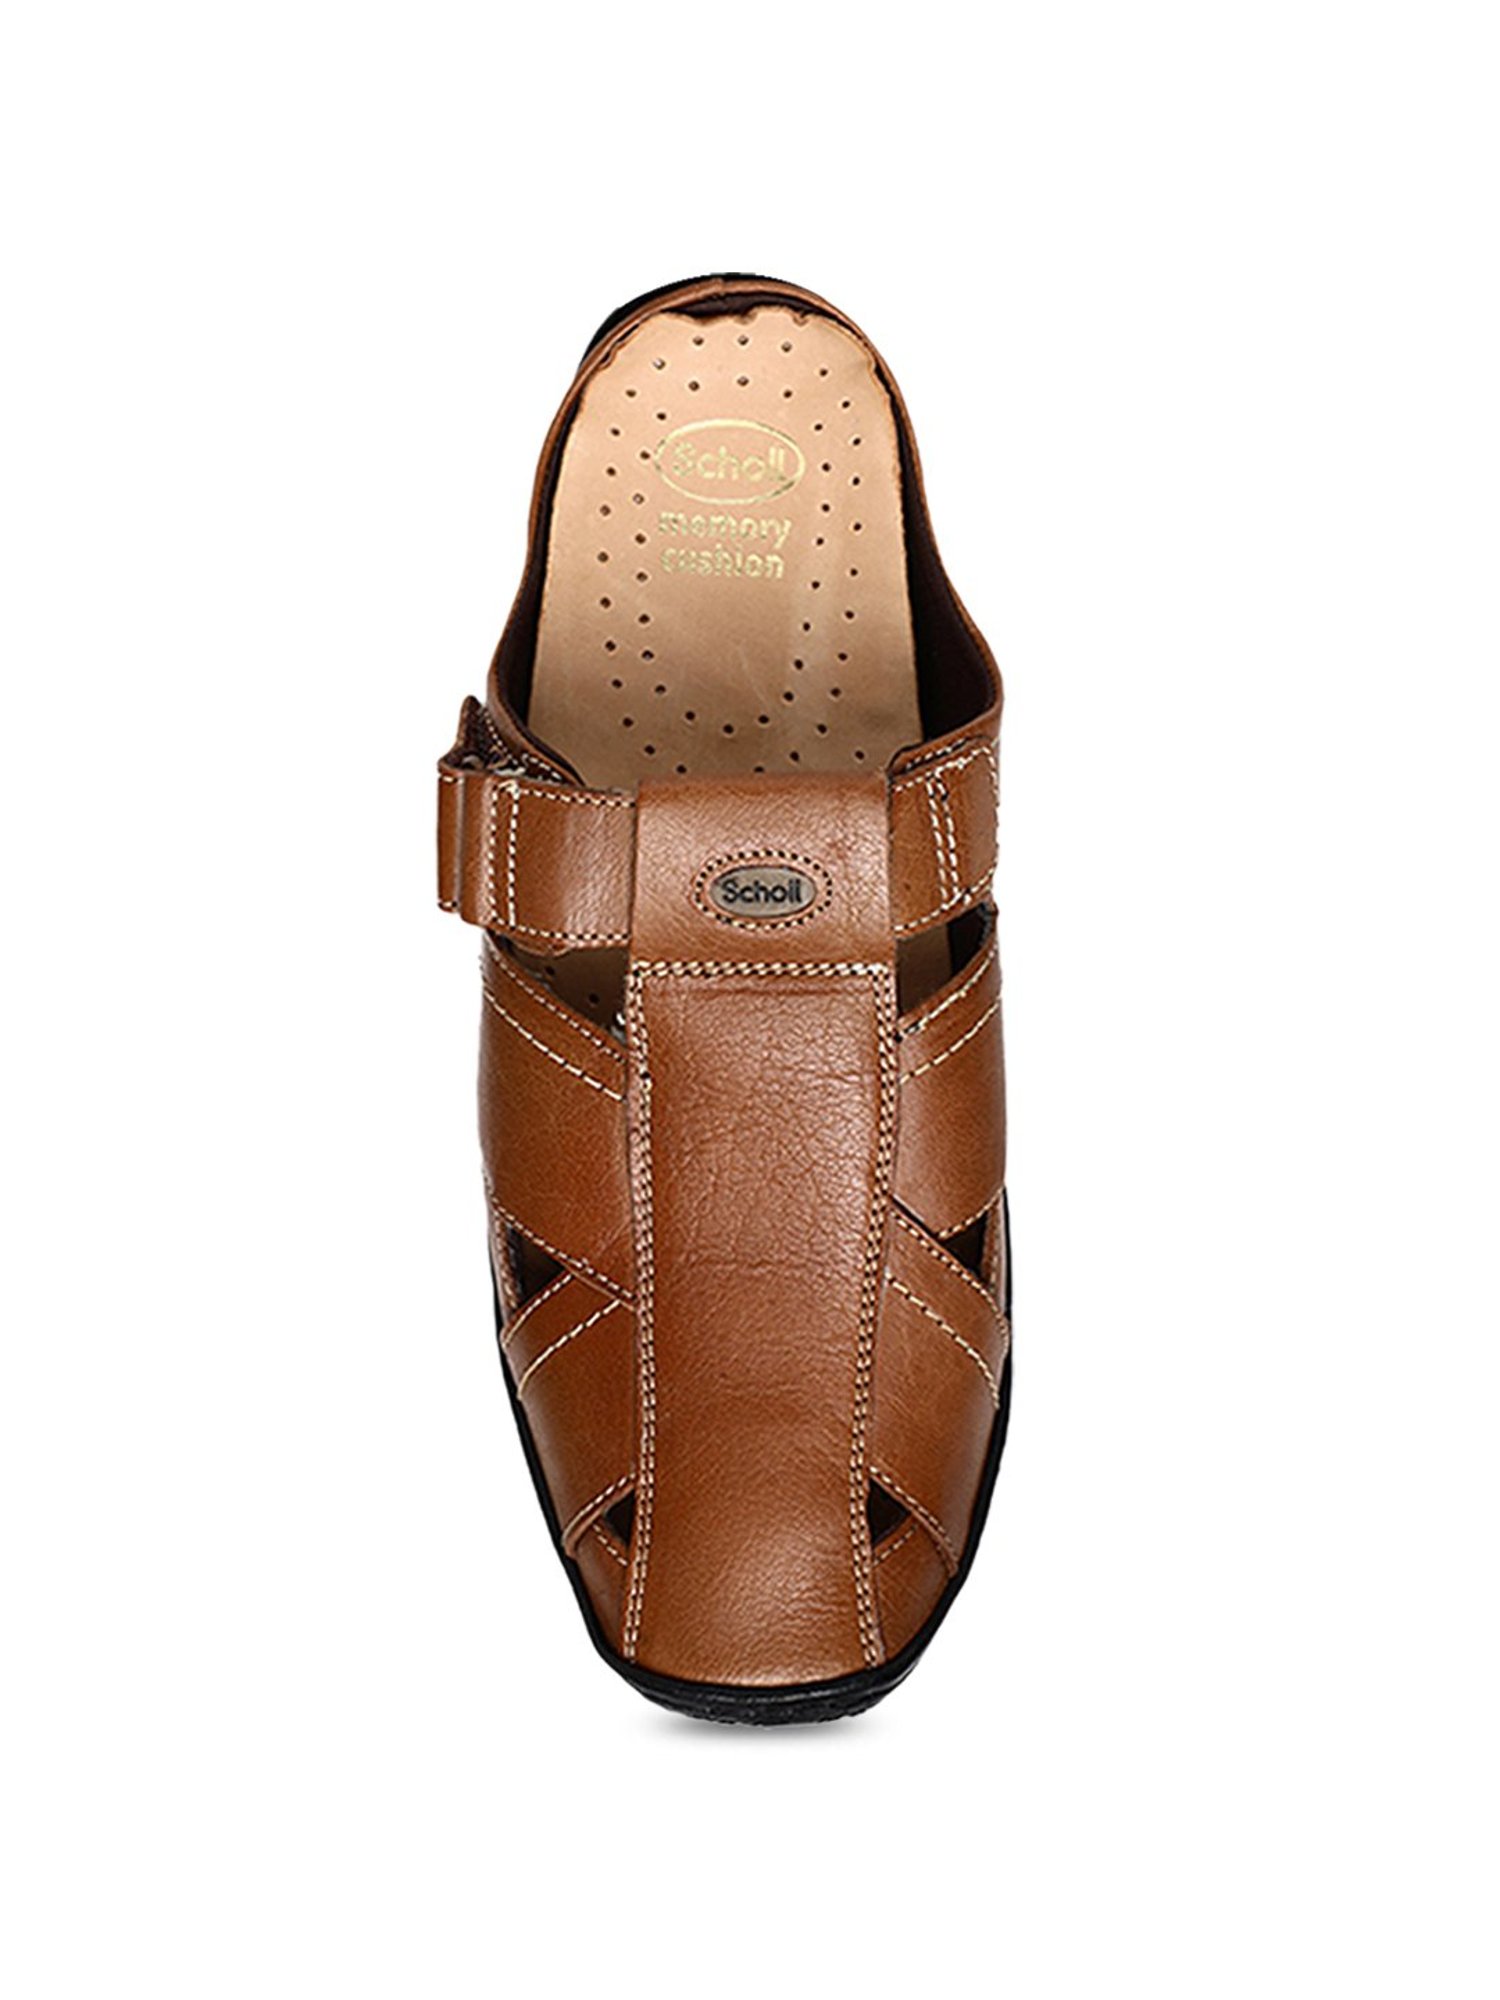 Bata CLAY SANDAL Men Brown Casual - Buy Bata CLAY SANDAL Men Brown Casual  Online at Best Price - Shop Online for Footwears in India | Flipkart.com